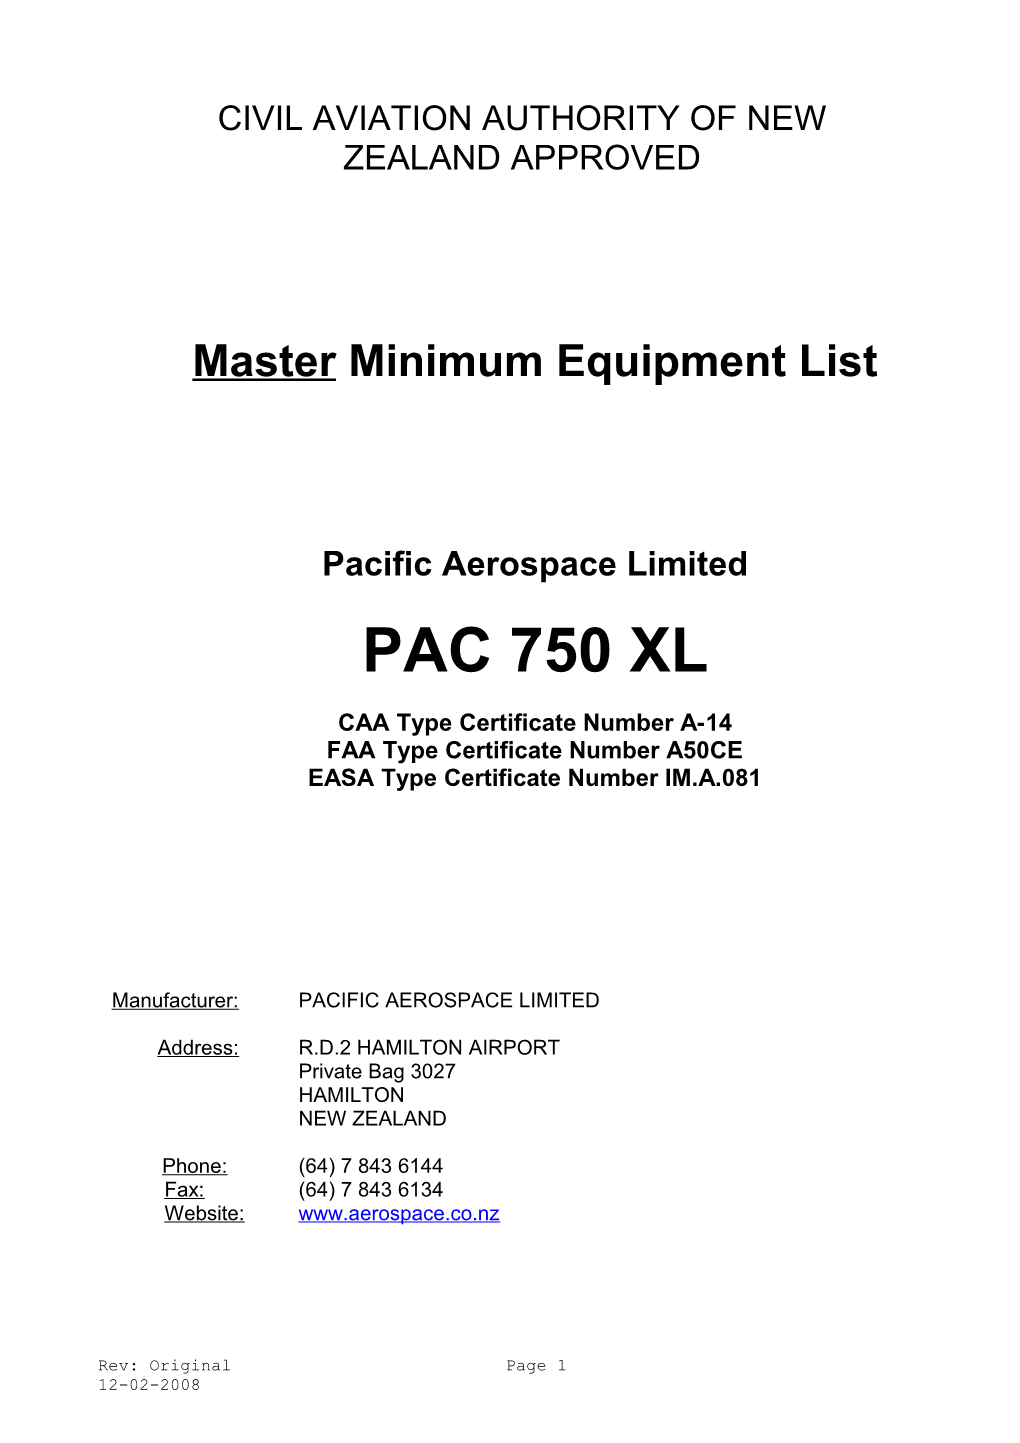 Mimimum Equipment List